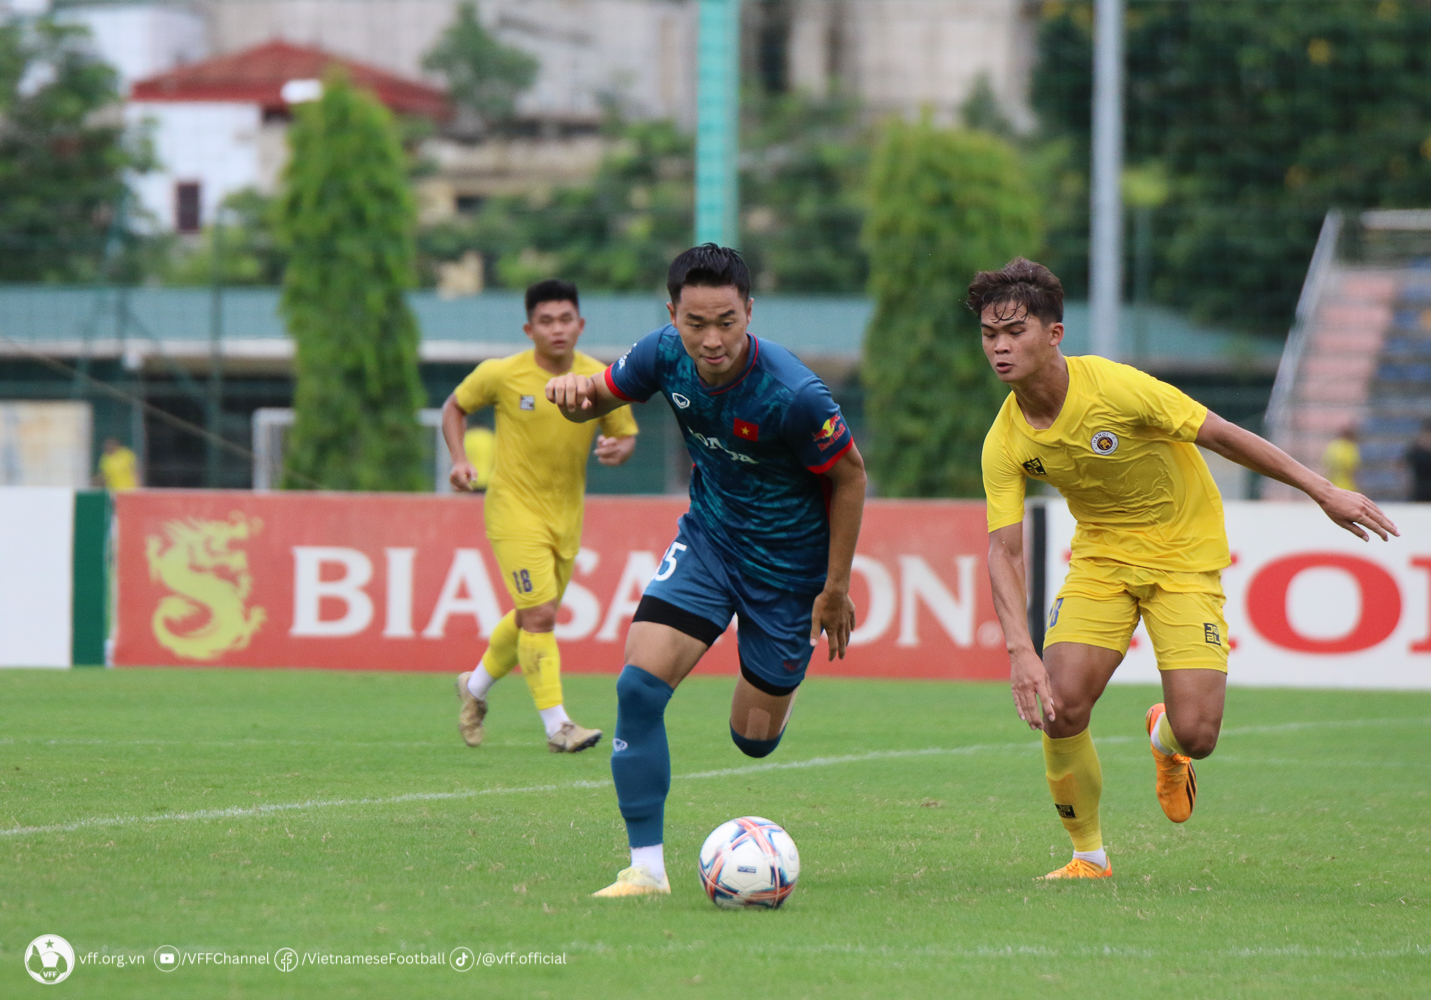 Đến phút 86, Lê Đình Long Vũ có pha thoát xuống tốc độ rồi hạ thủ thành U21 Hà Nội trong thế đối mặt, ấn định chiến thắng 2-1 cho U23 Việt Nam.